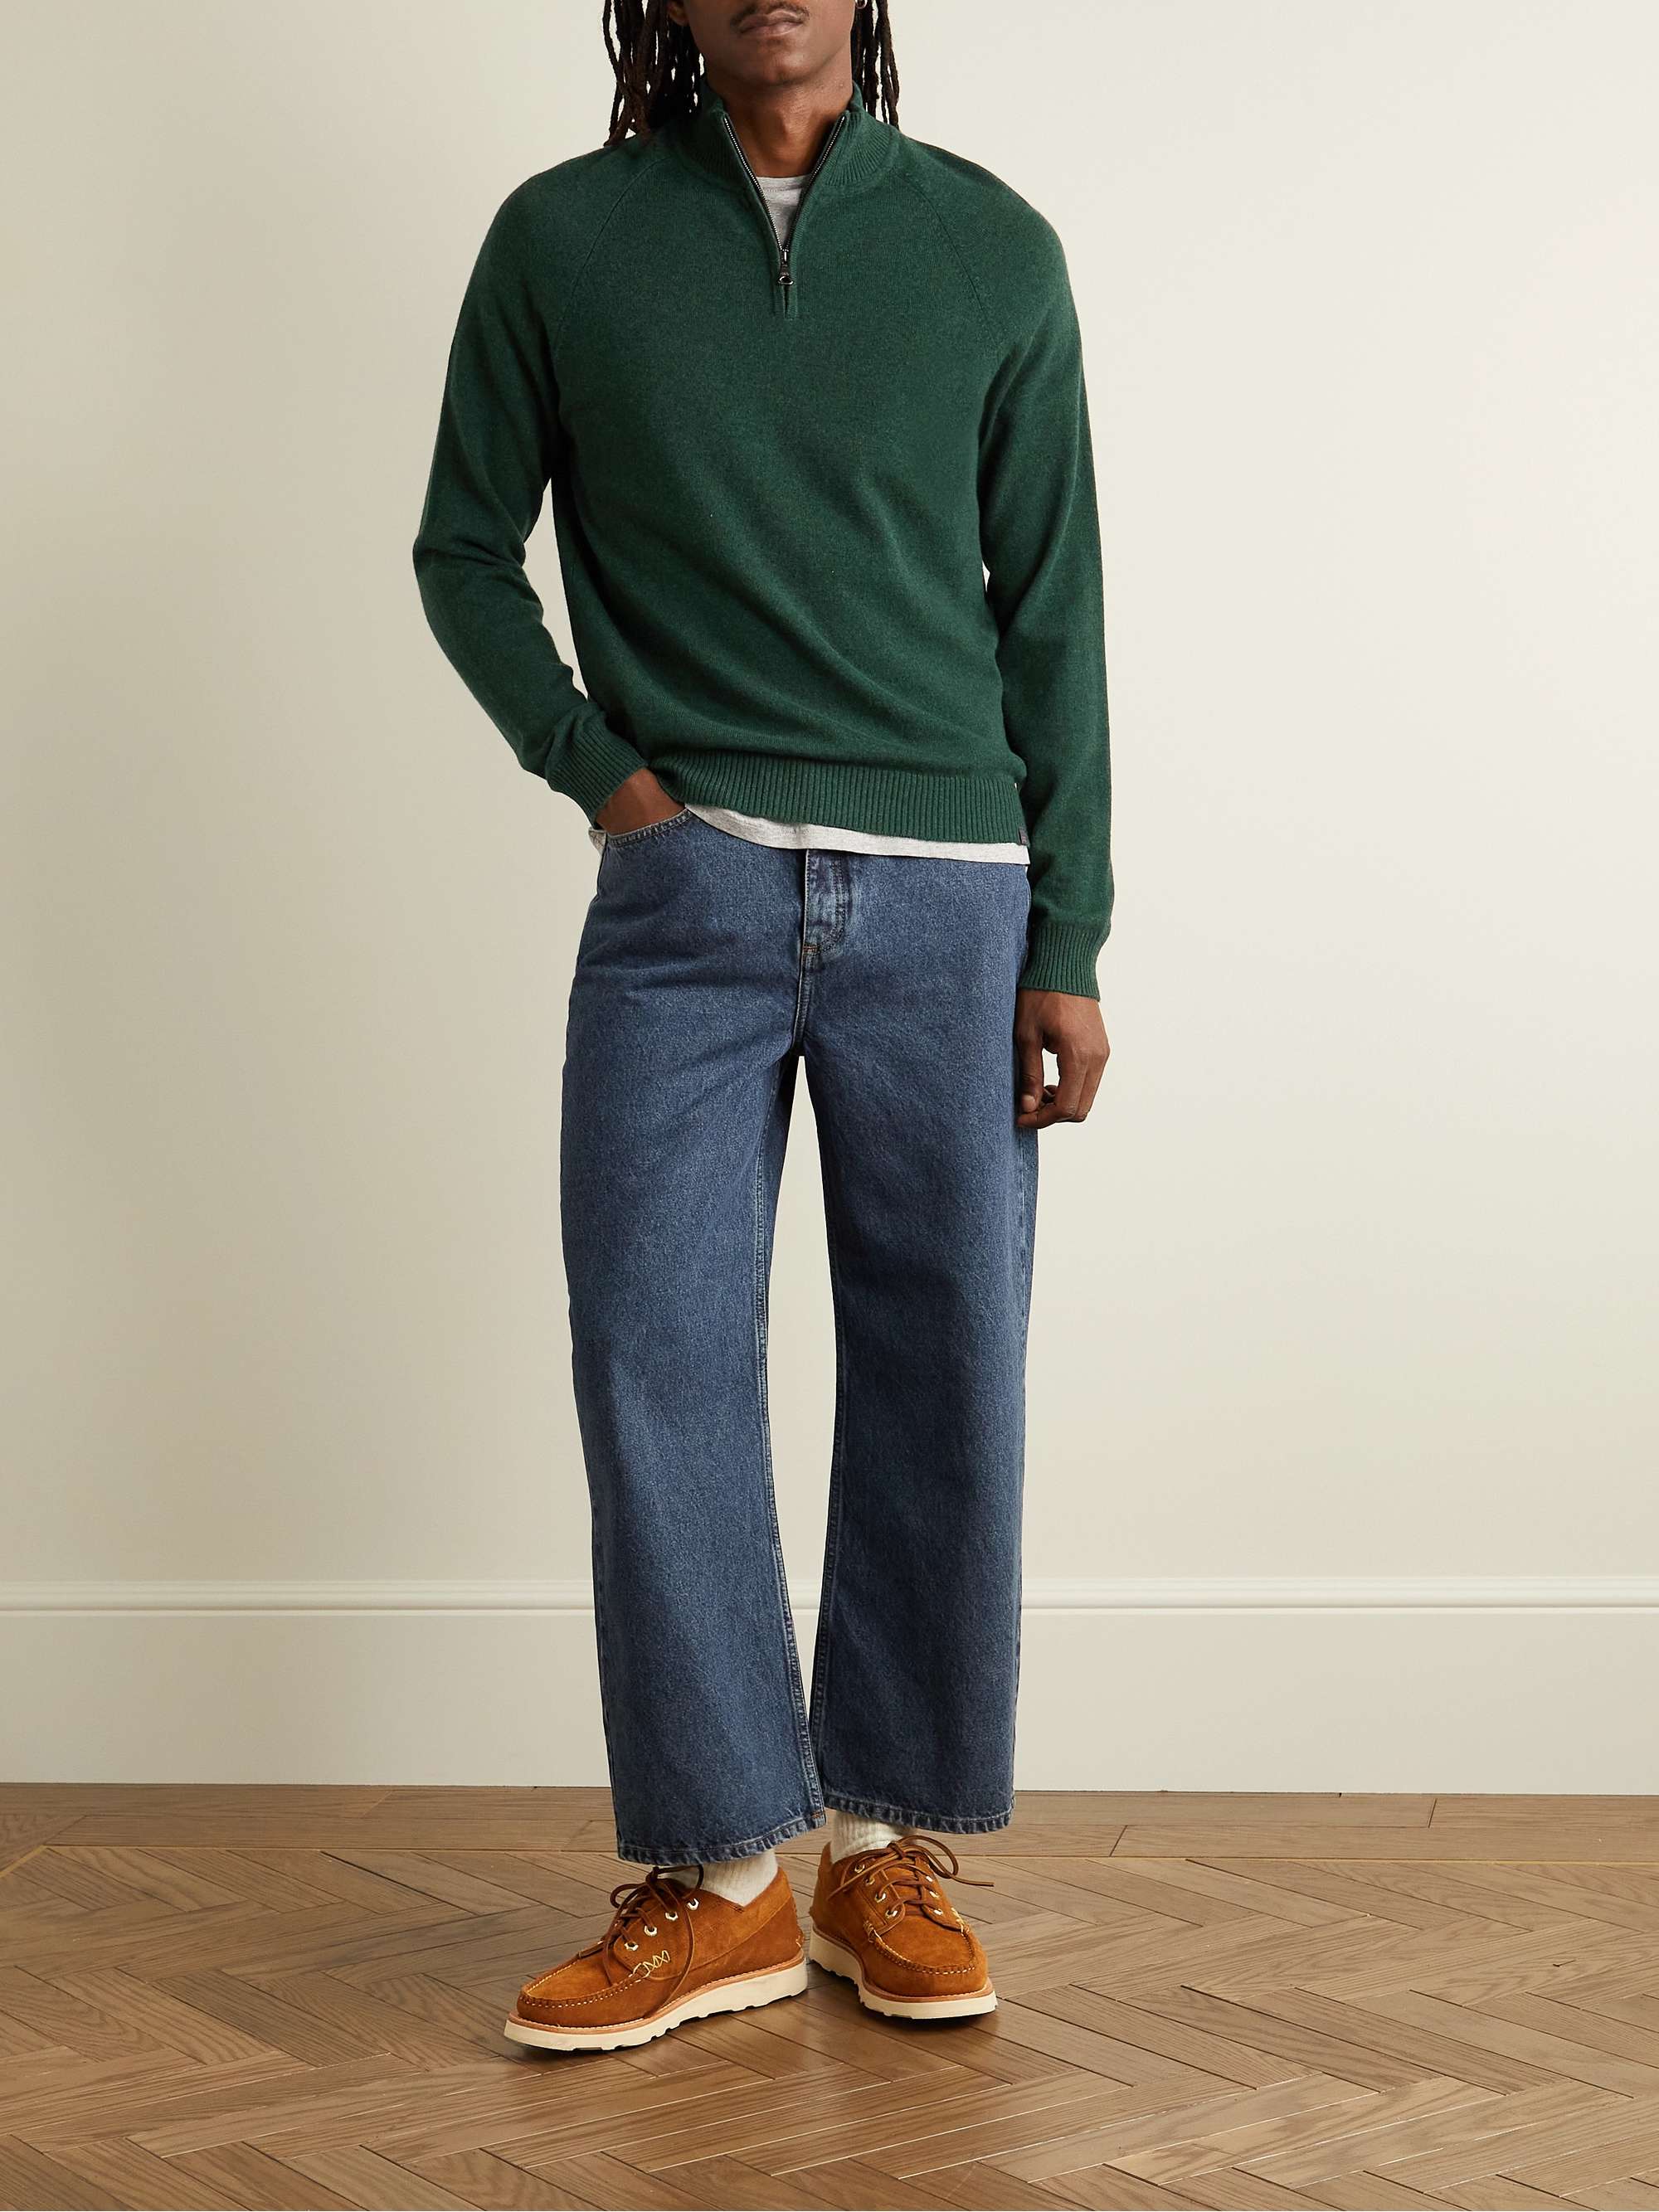 DEREK ROSE Finley Half-Zip Cashmere Sweater